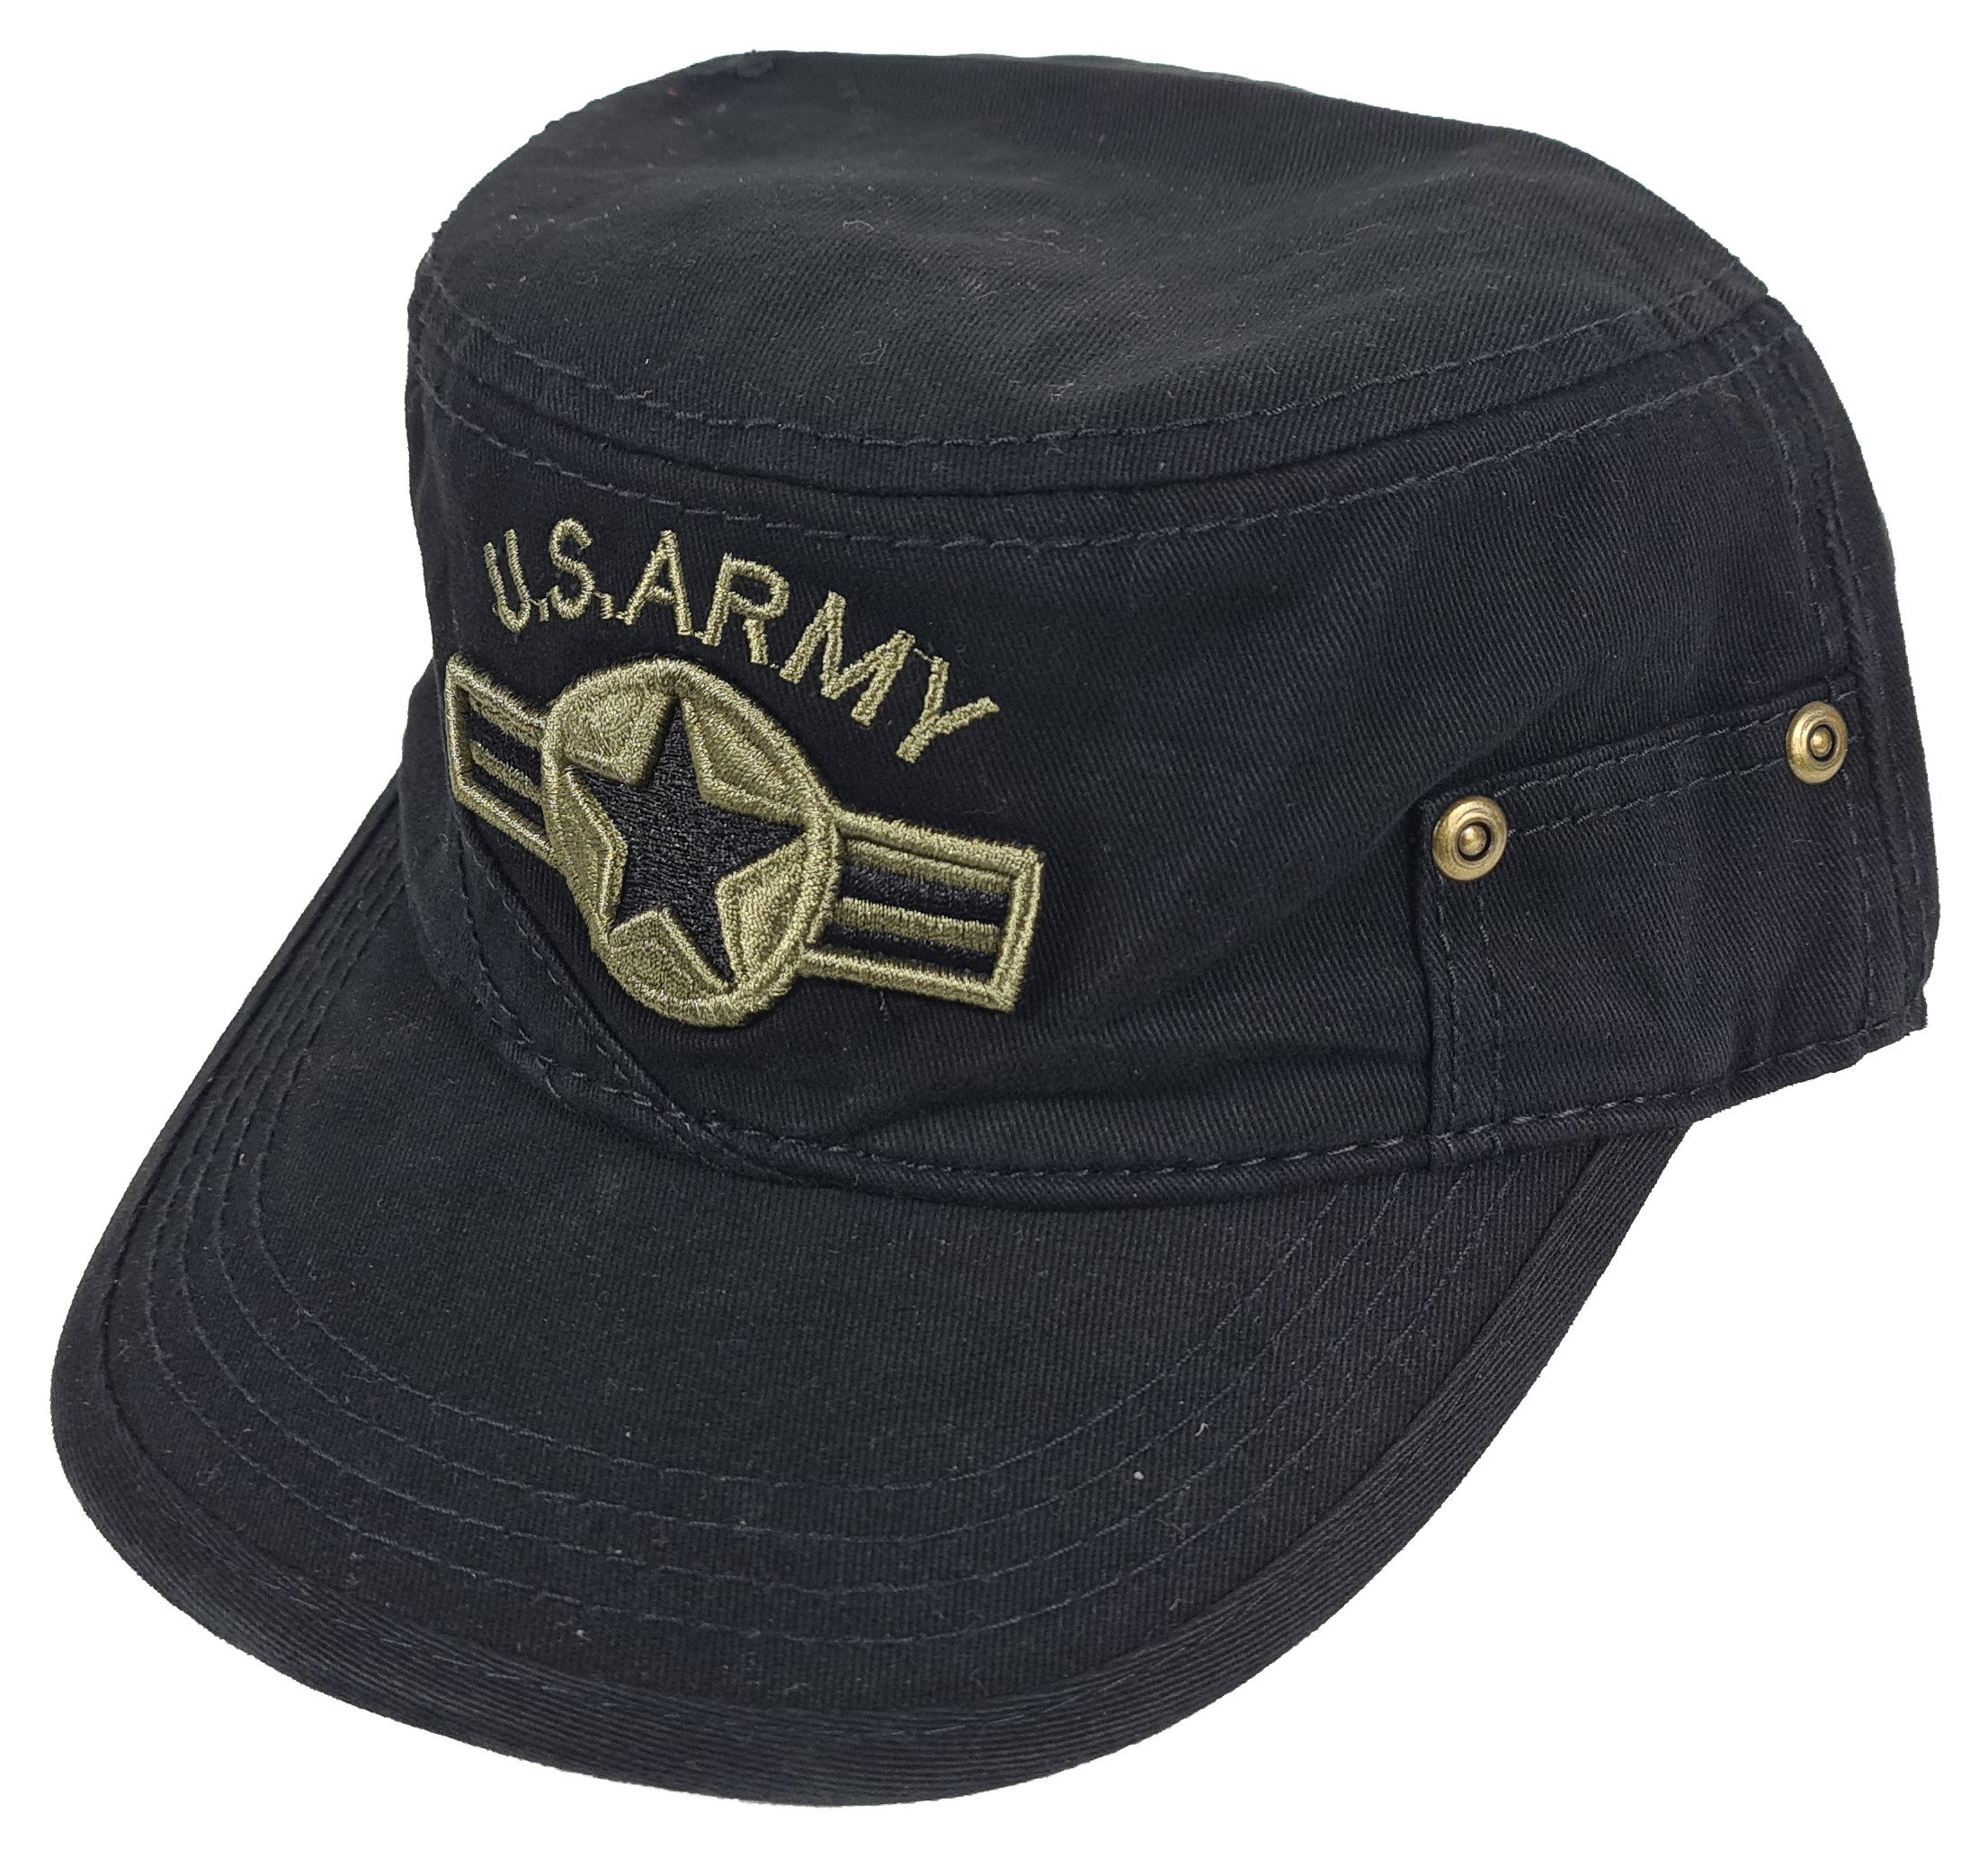 Einkaufszauber Schirmmütze US Army Cap Schwarz - Militär Mütze US Army Mütze